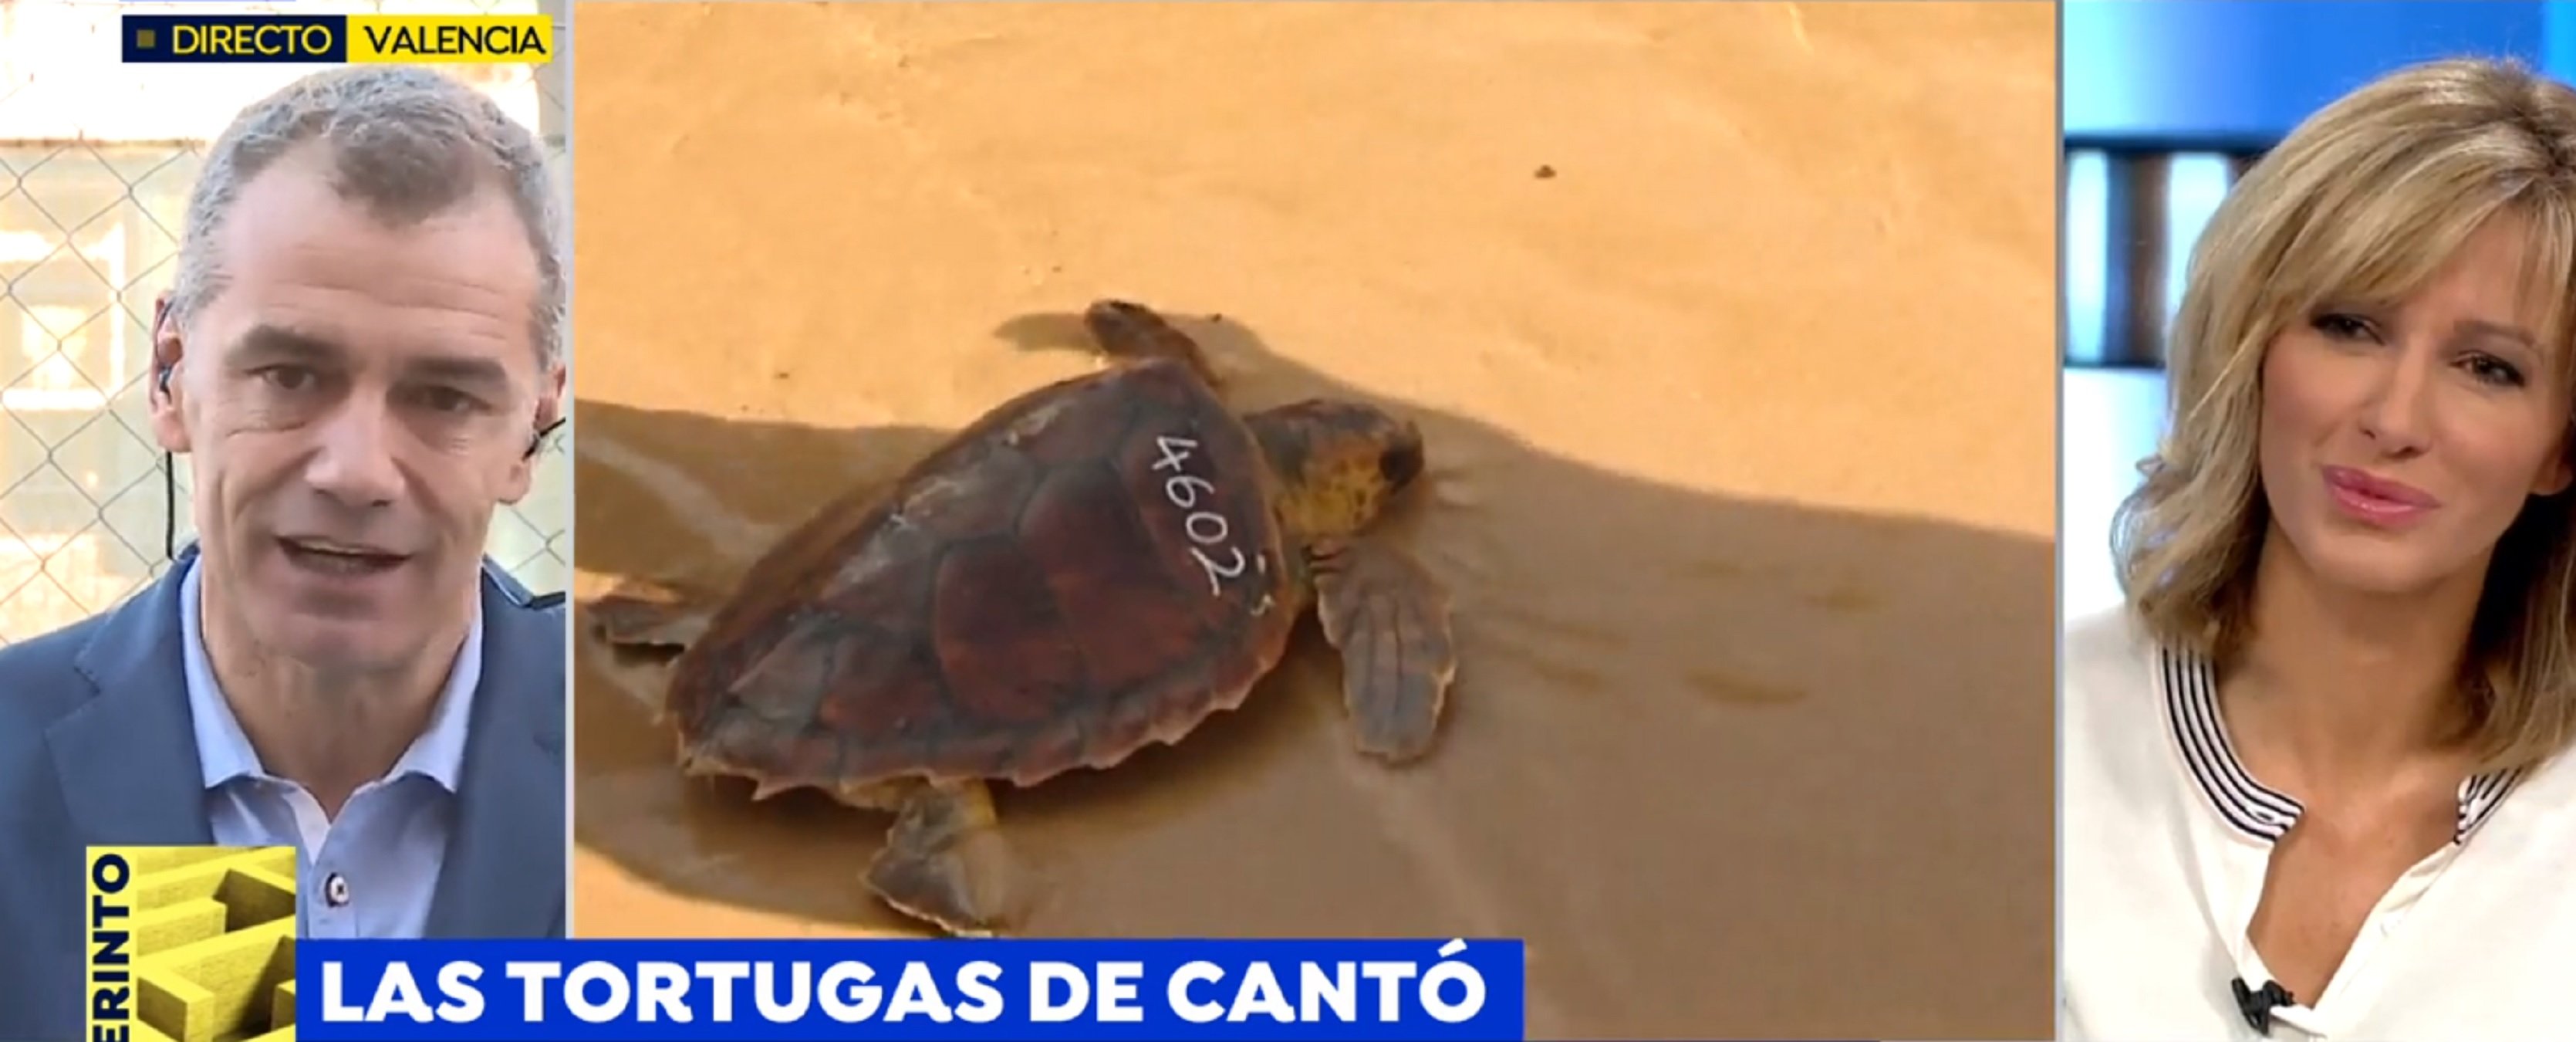 Toni Cantó, denunciado por tener 40 tortugas: "Tengo muchos bichos en casa"